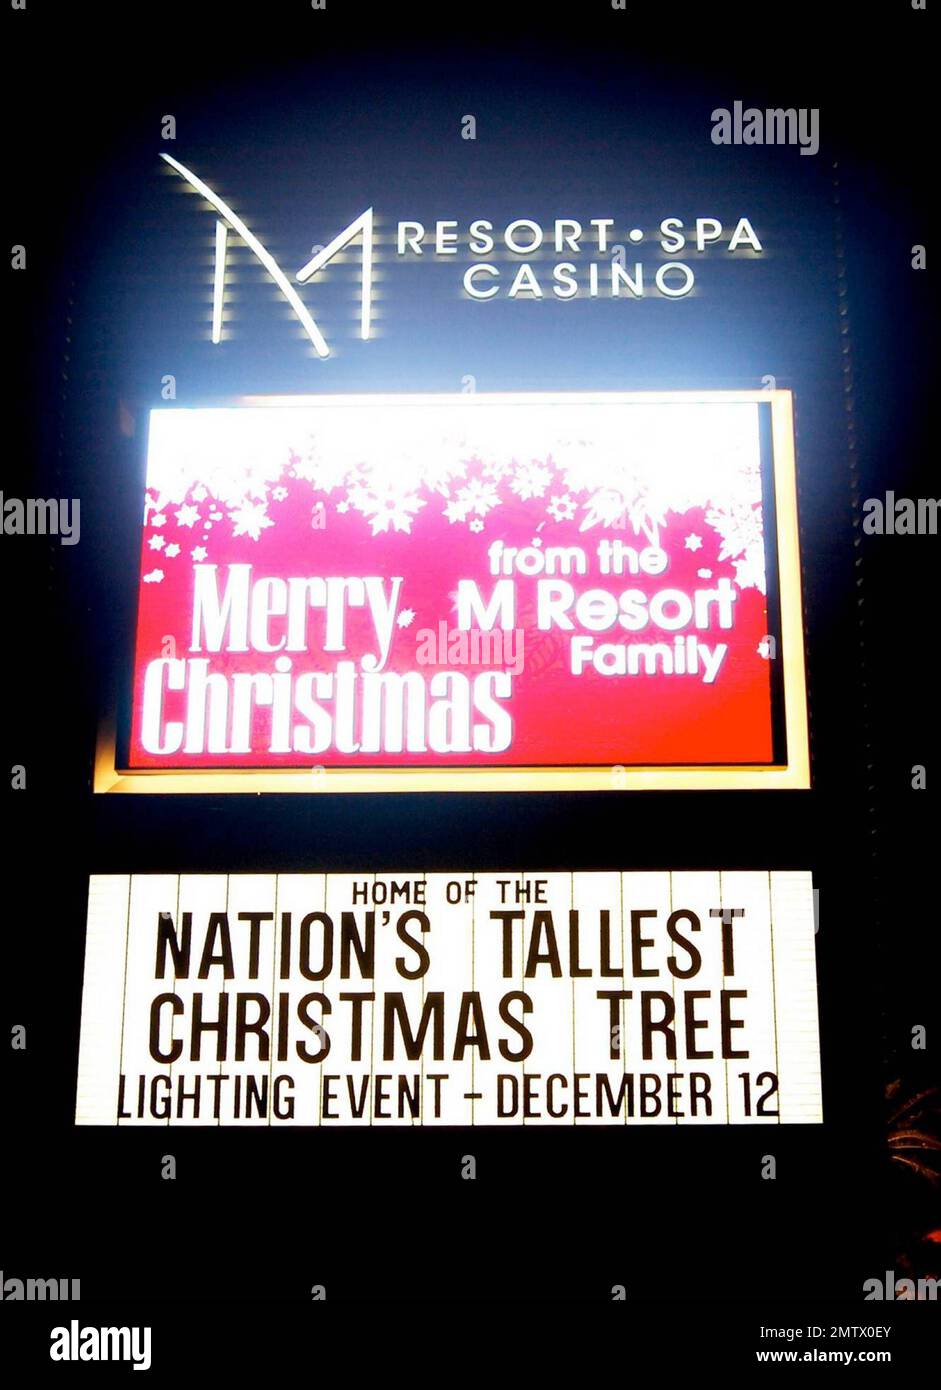 Der höchste Weihnachtsbaum der Nation wird während einer Zeremonie im M Resort Spa and Casino beleuchtet. Der 11 Tonnen schwere, 109 Meter hohe Baum wurde für diesen Anlass von Hand gepflückt und aus Oregon hergebracht. Las Vegas, Nevada 12/12/09. Stockfoto